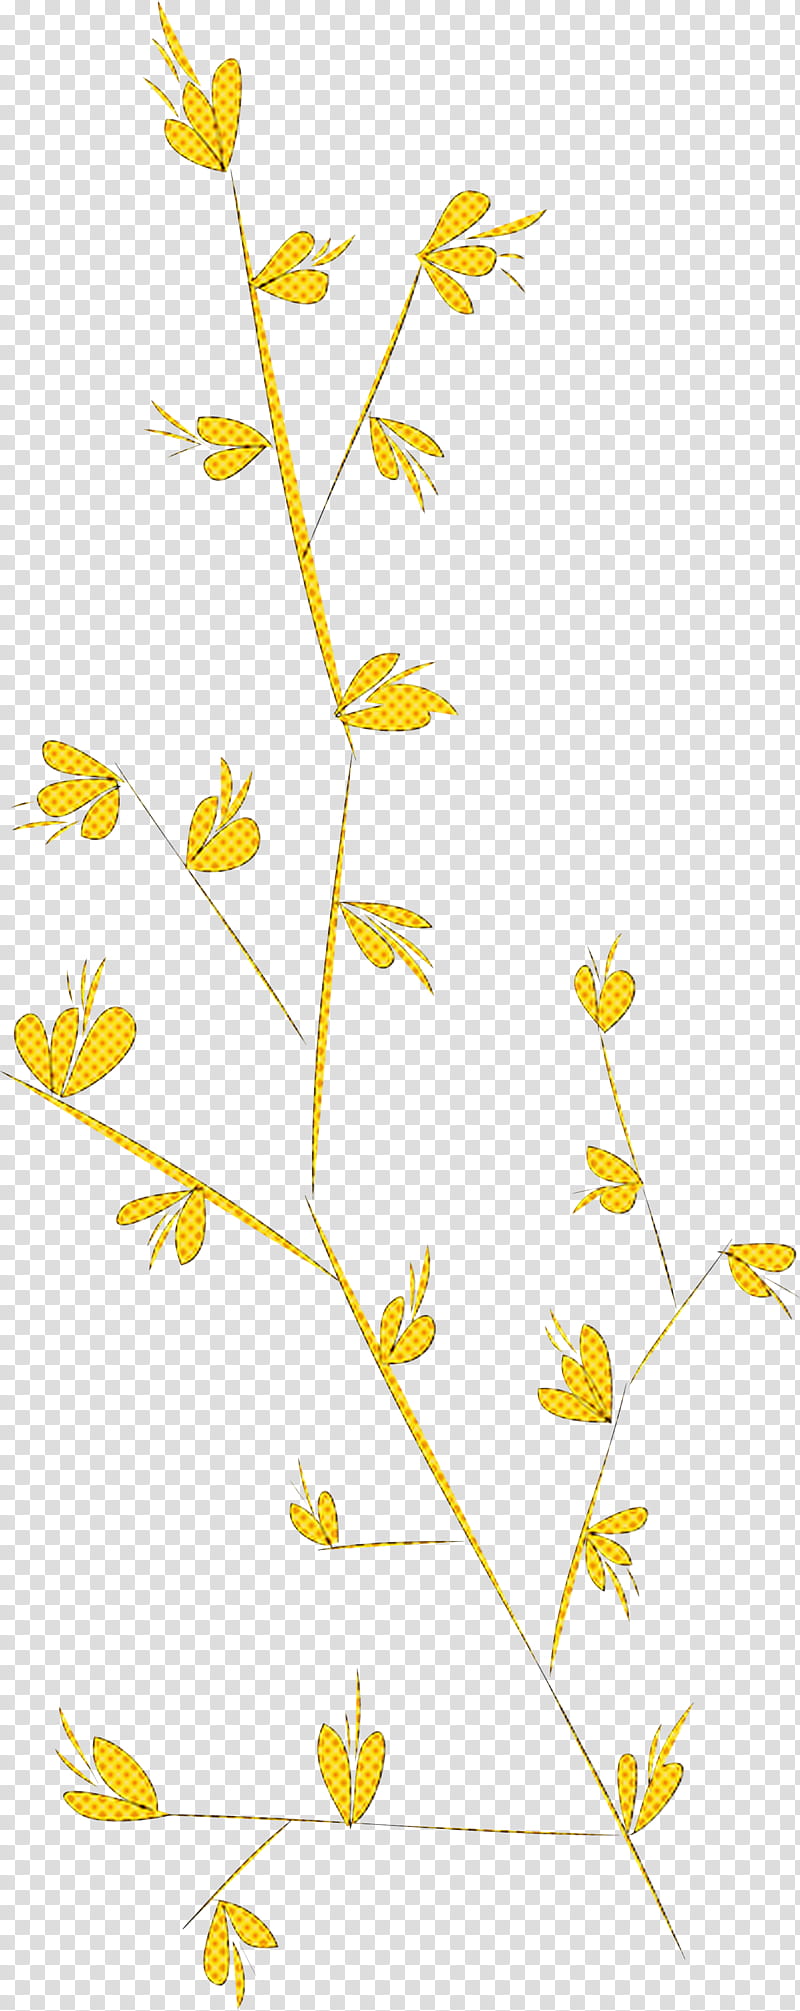 simple leaf simple leaf drawing simple leaf outline, Plant Stem, Twig, Line Art, Cartoon, Leaf Painting, Leaf Black White, Floral Design transparent background PNG clipart